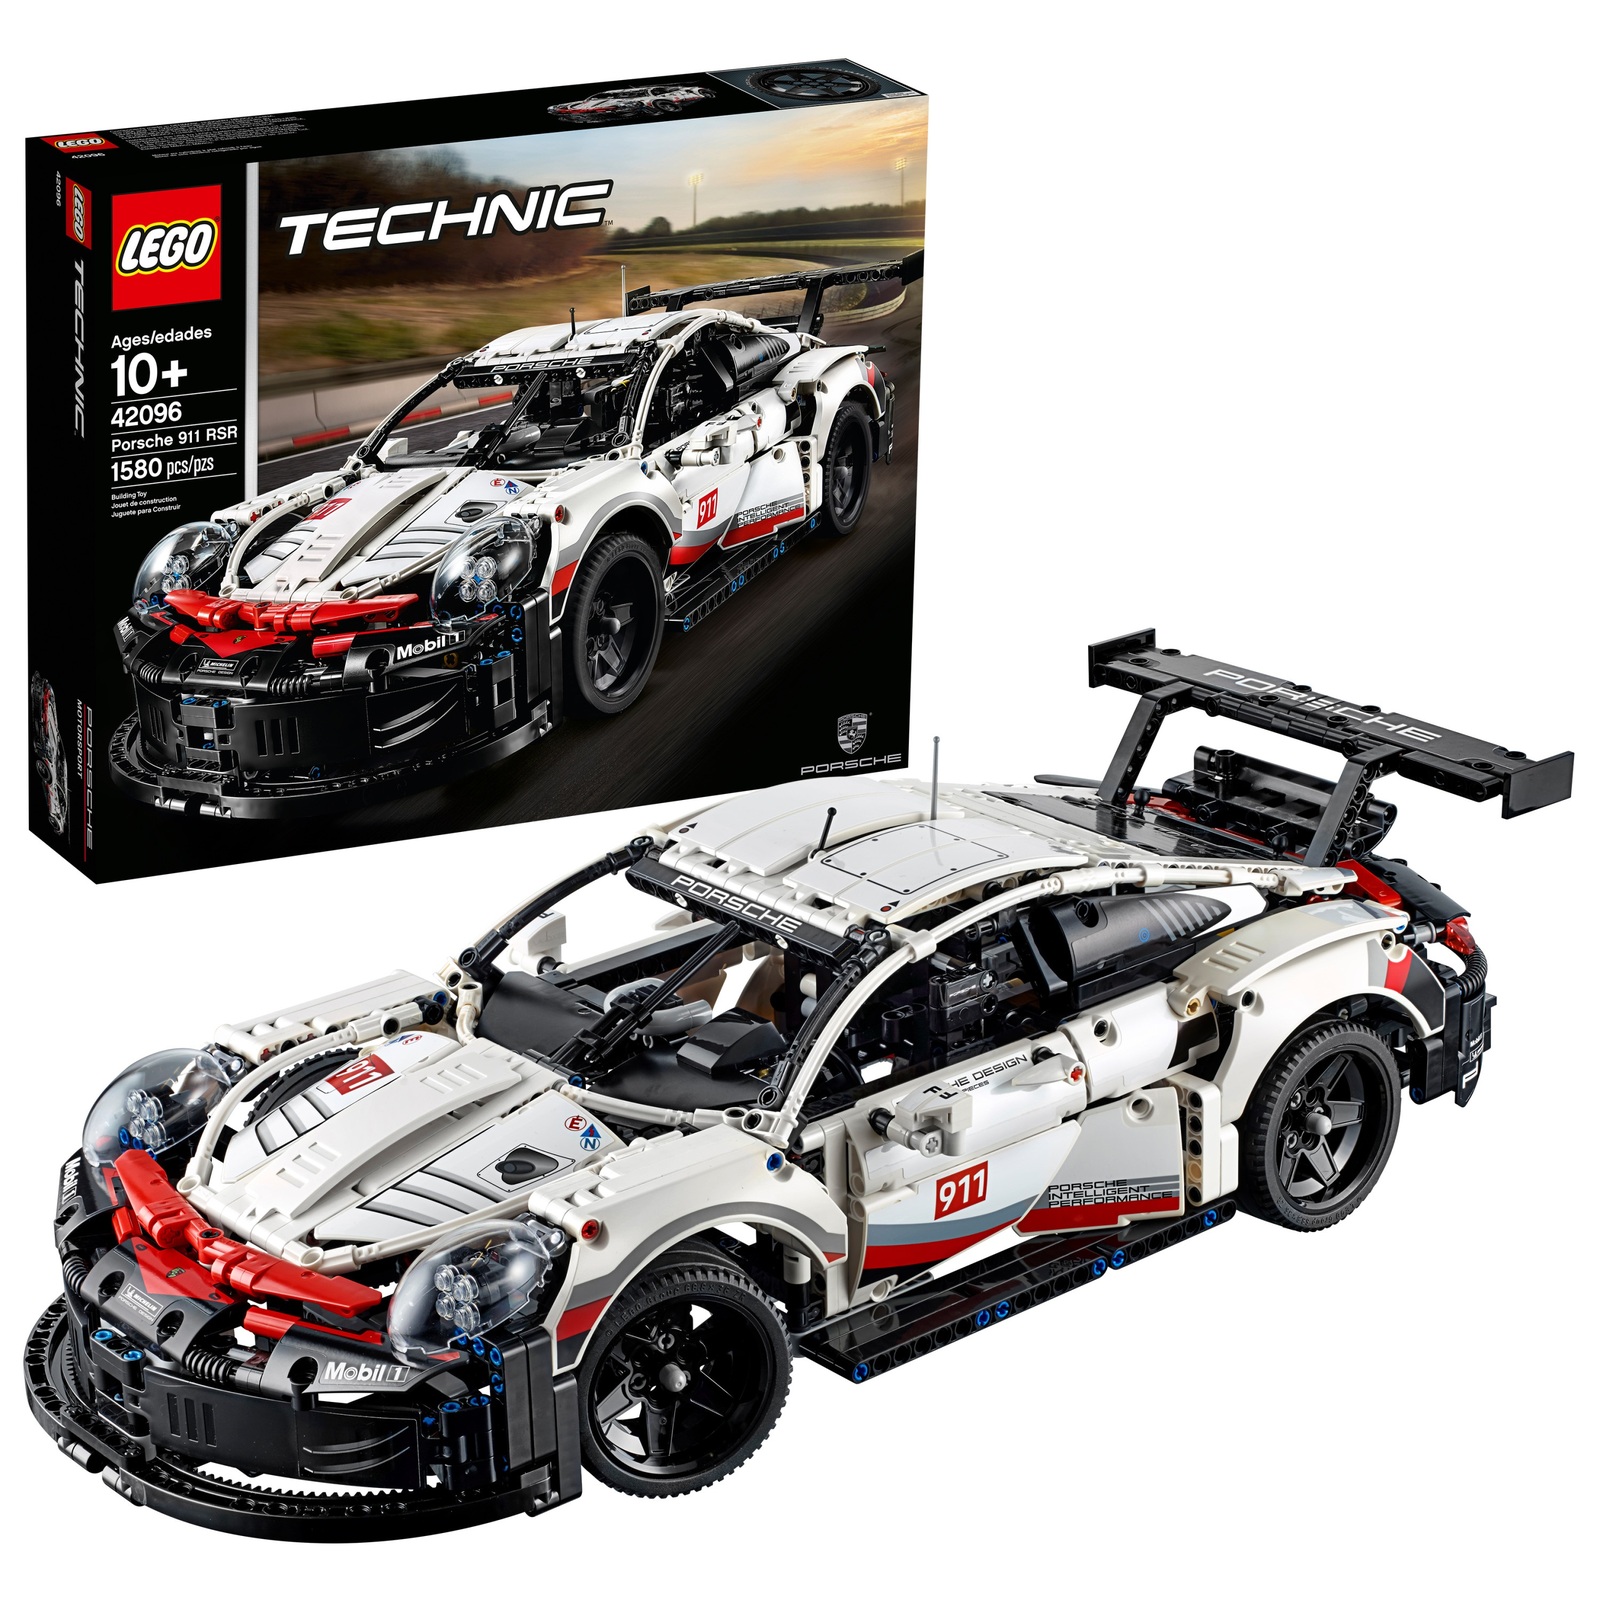 LEGO Technic Porsche 911 RSR 42096 Race Sport Car Building Toy Set (1580 Pieces)